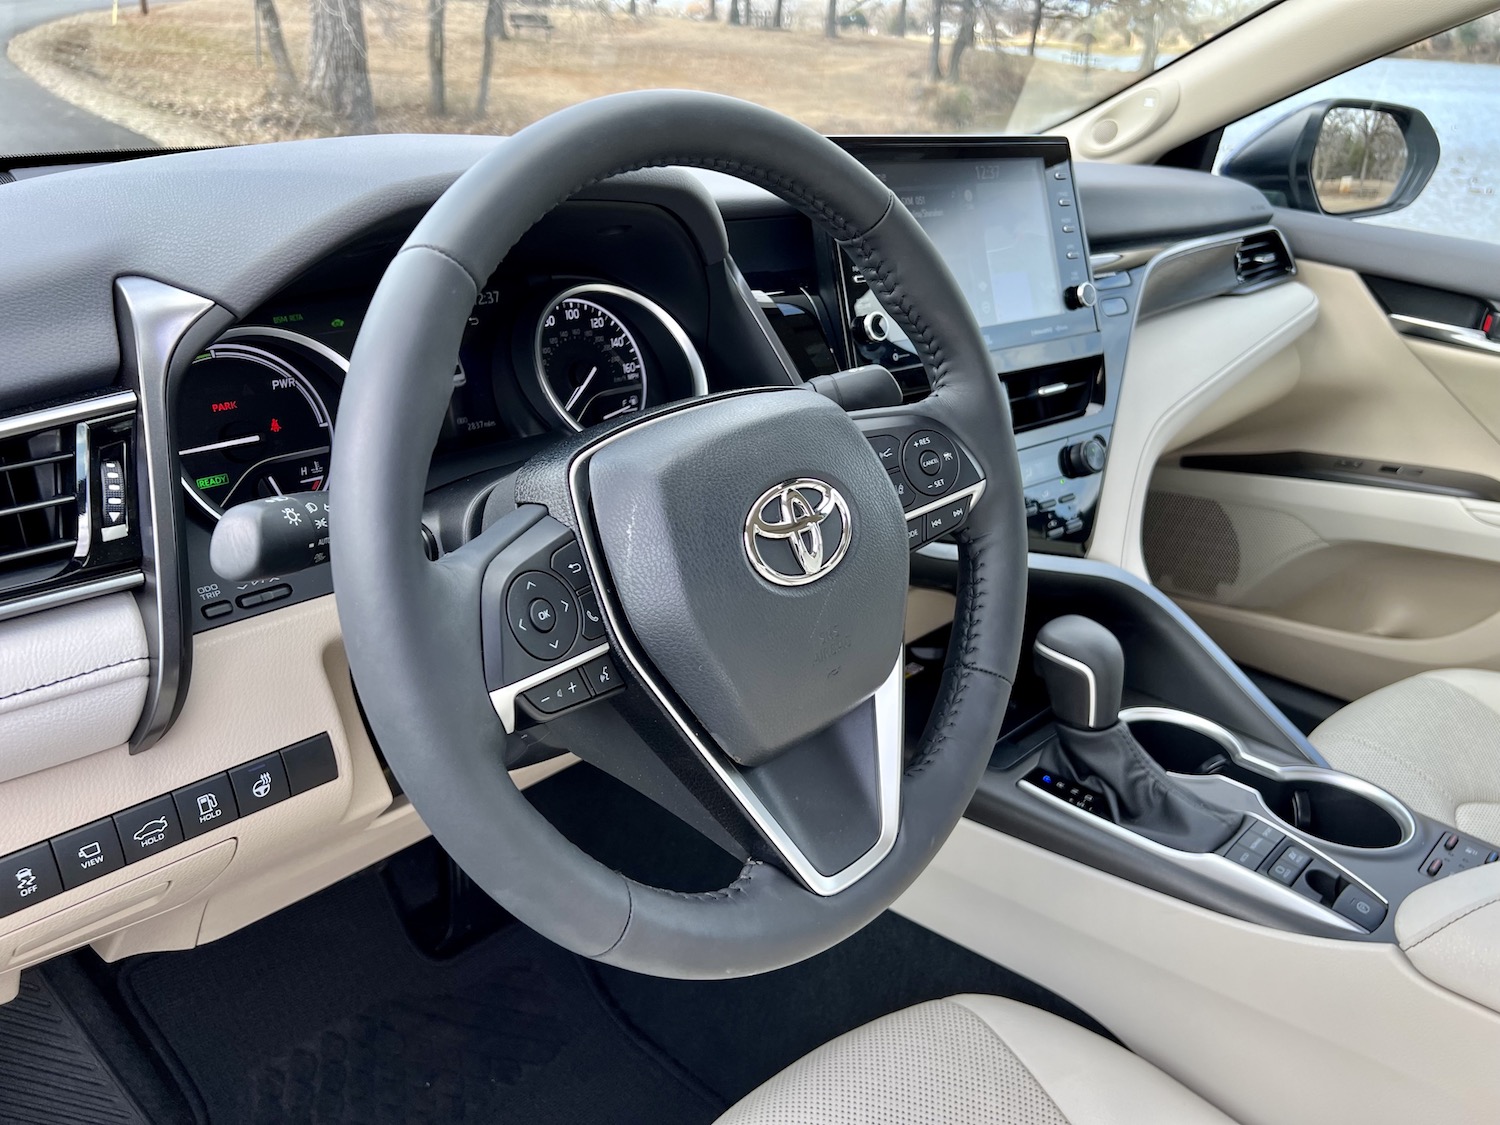 ROAD TEST: 2020 Toyota Camry Hybrid - Car Help Canada